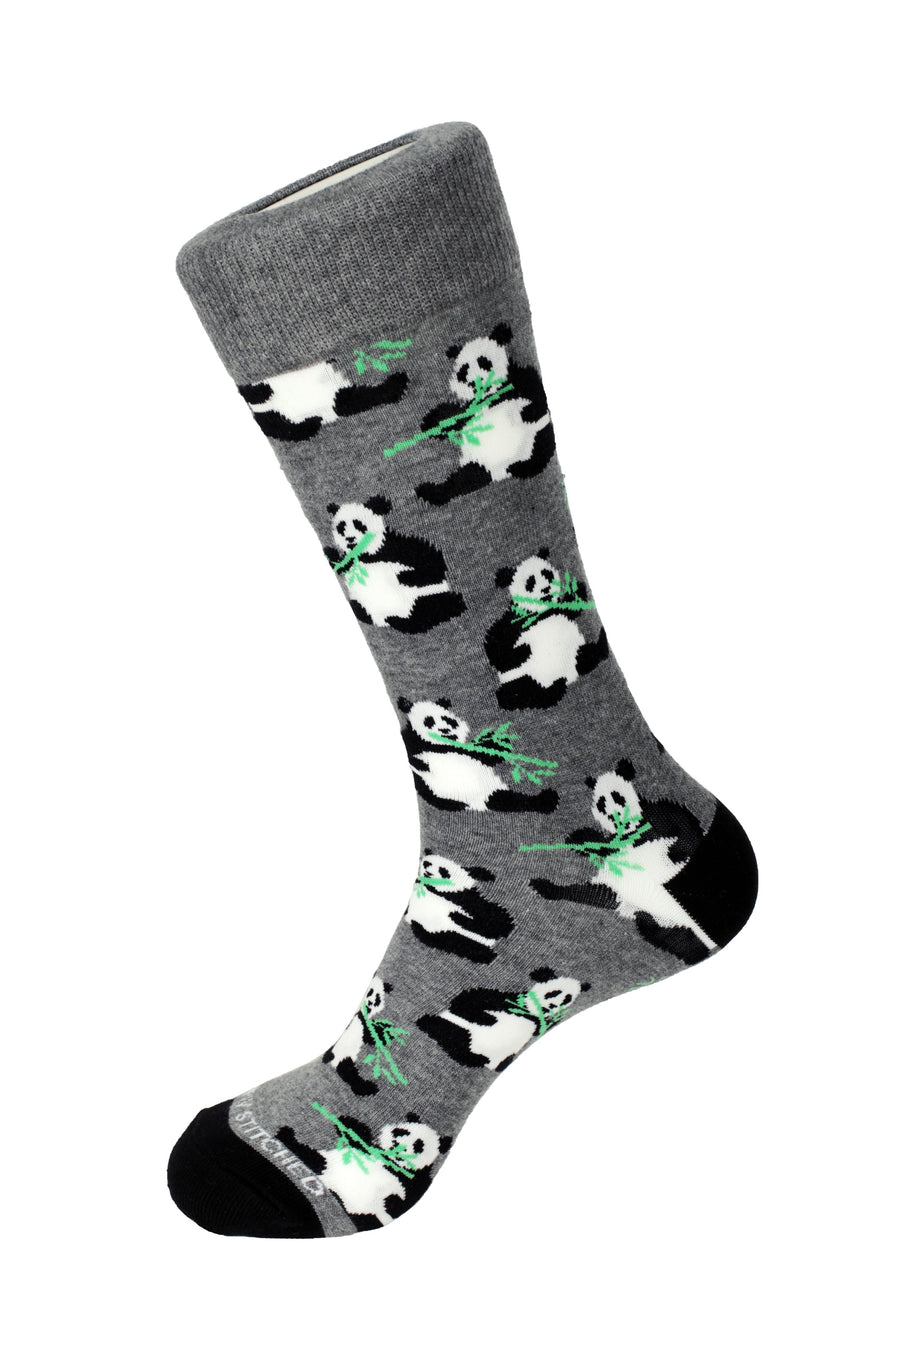 Panda Eating Crew Sock